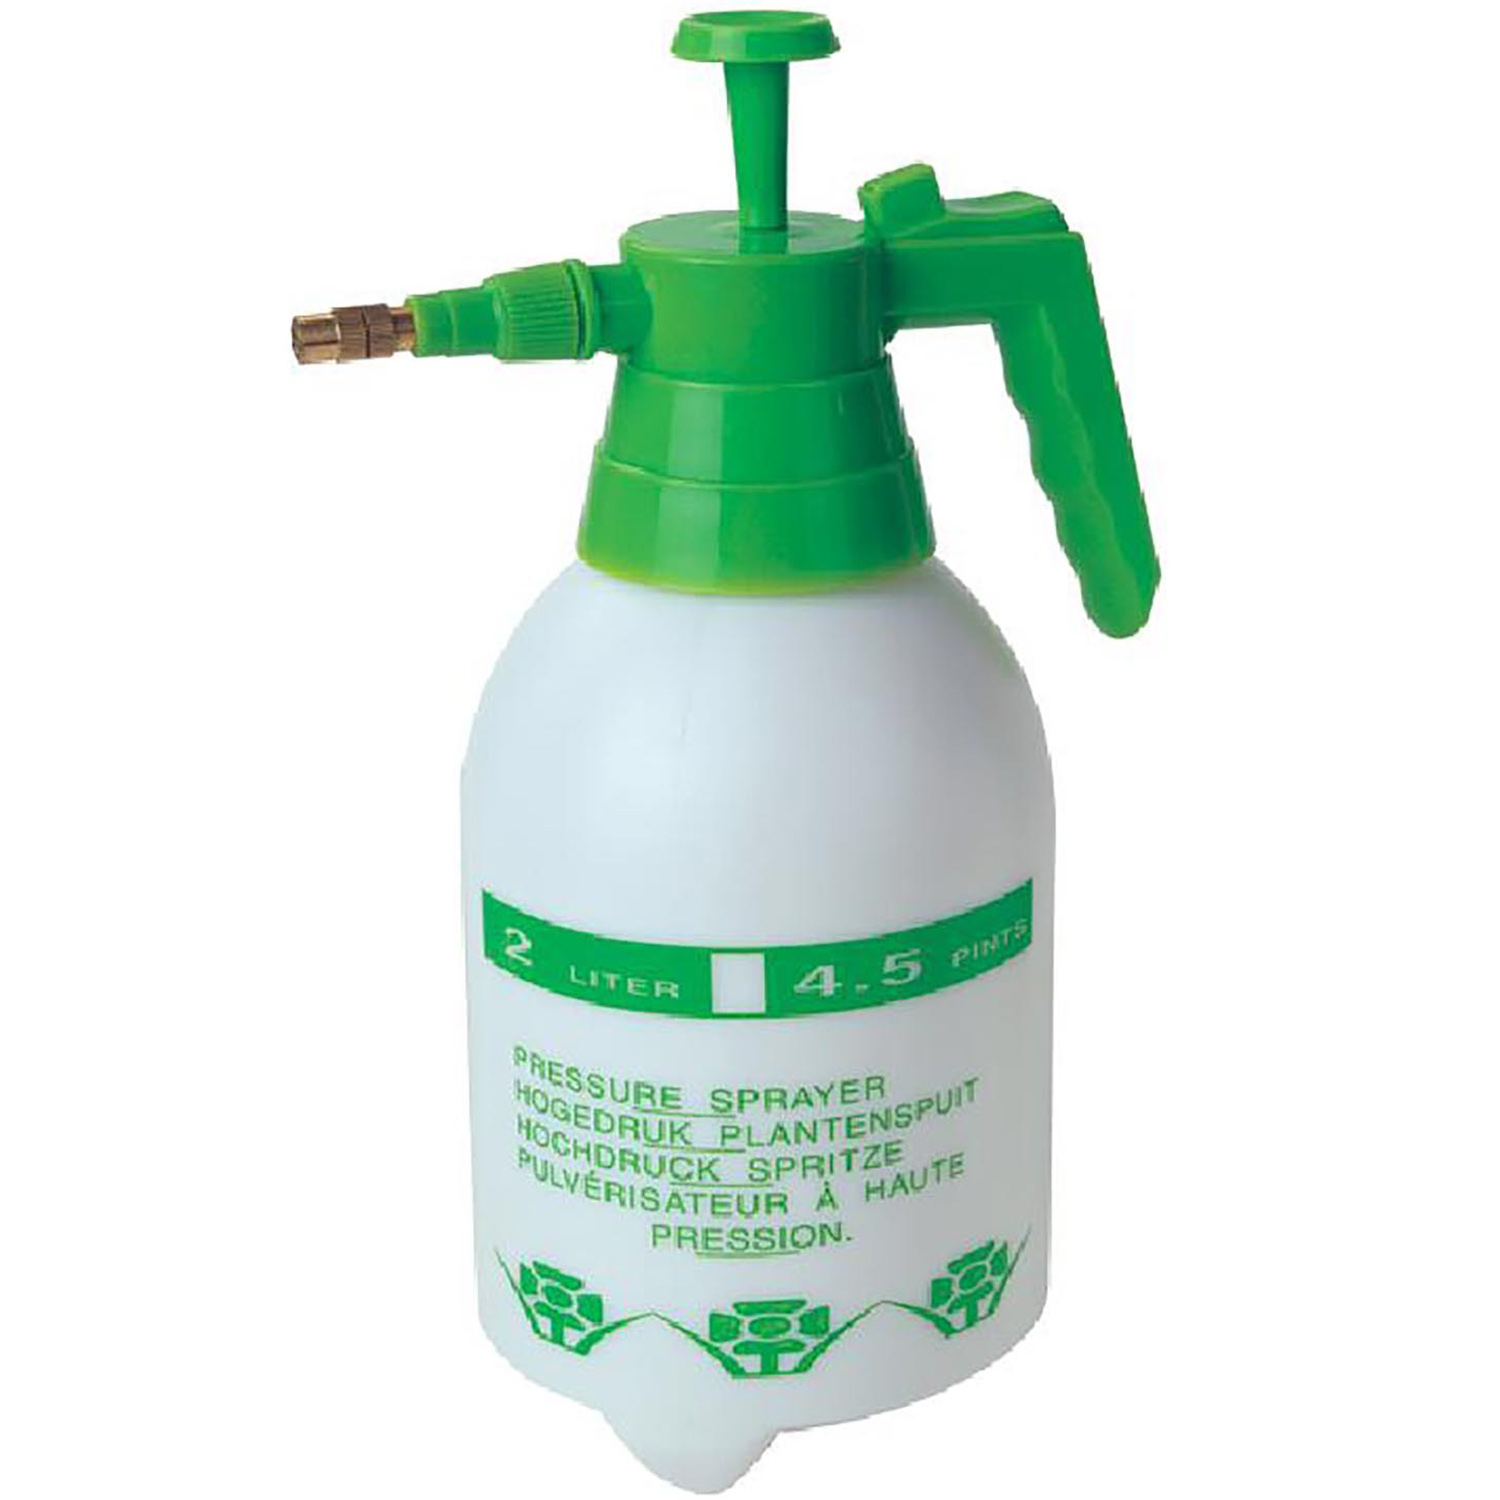 Pump Action Pressure Sprayer - White Image